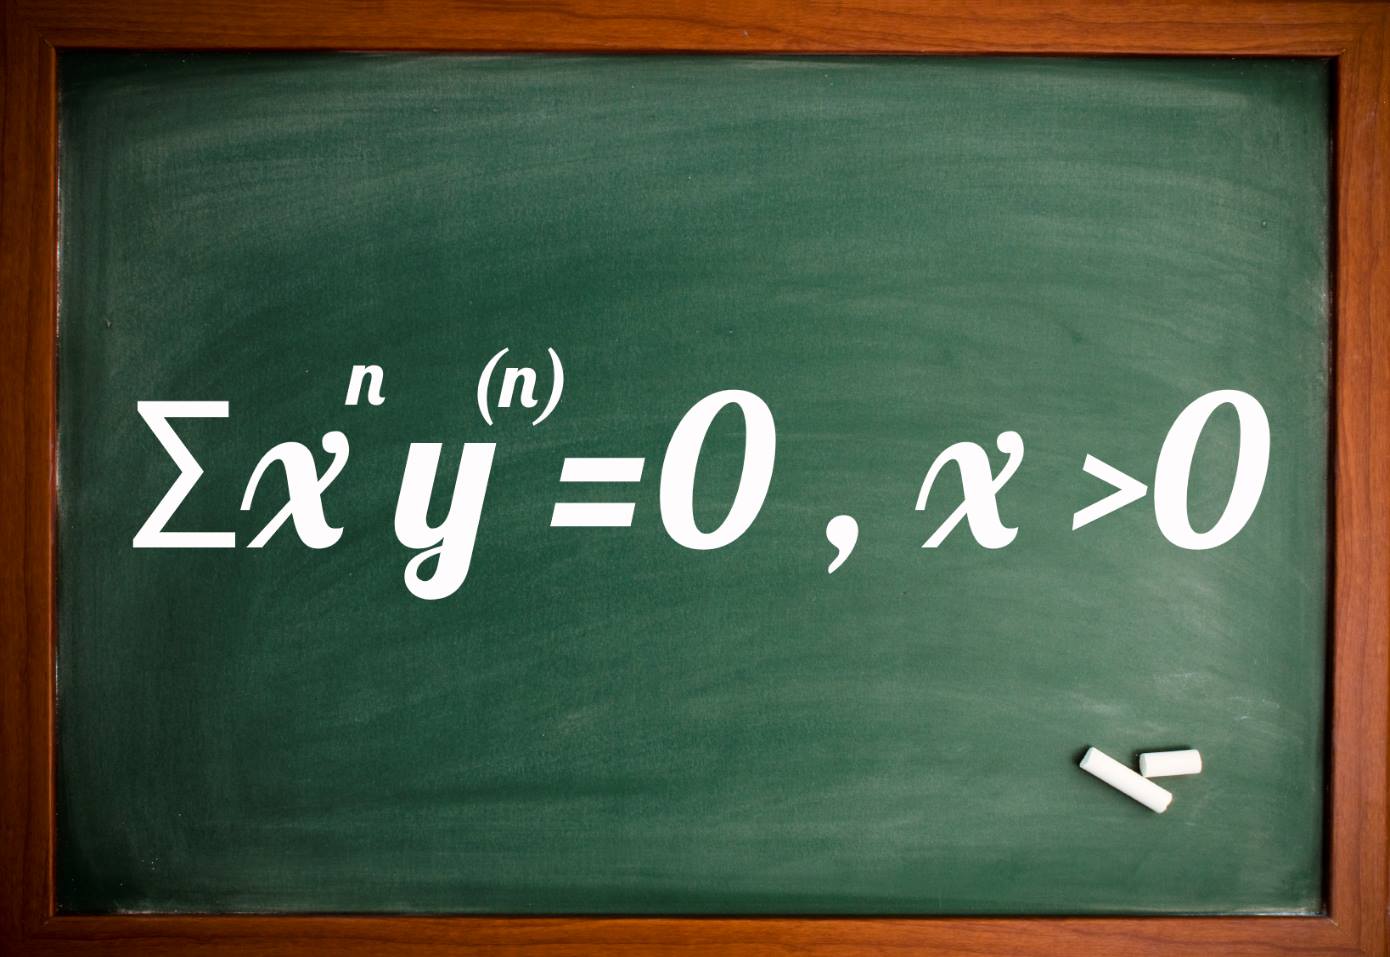 معادله دیفرانسیل اویلر مراتب بالاتر — به زبان ساده